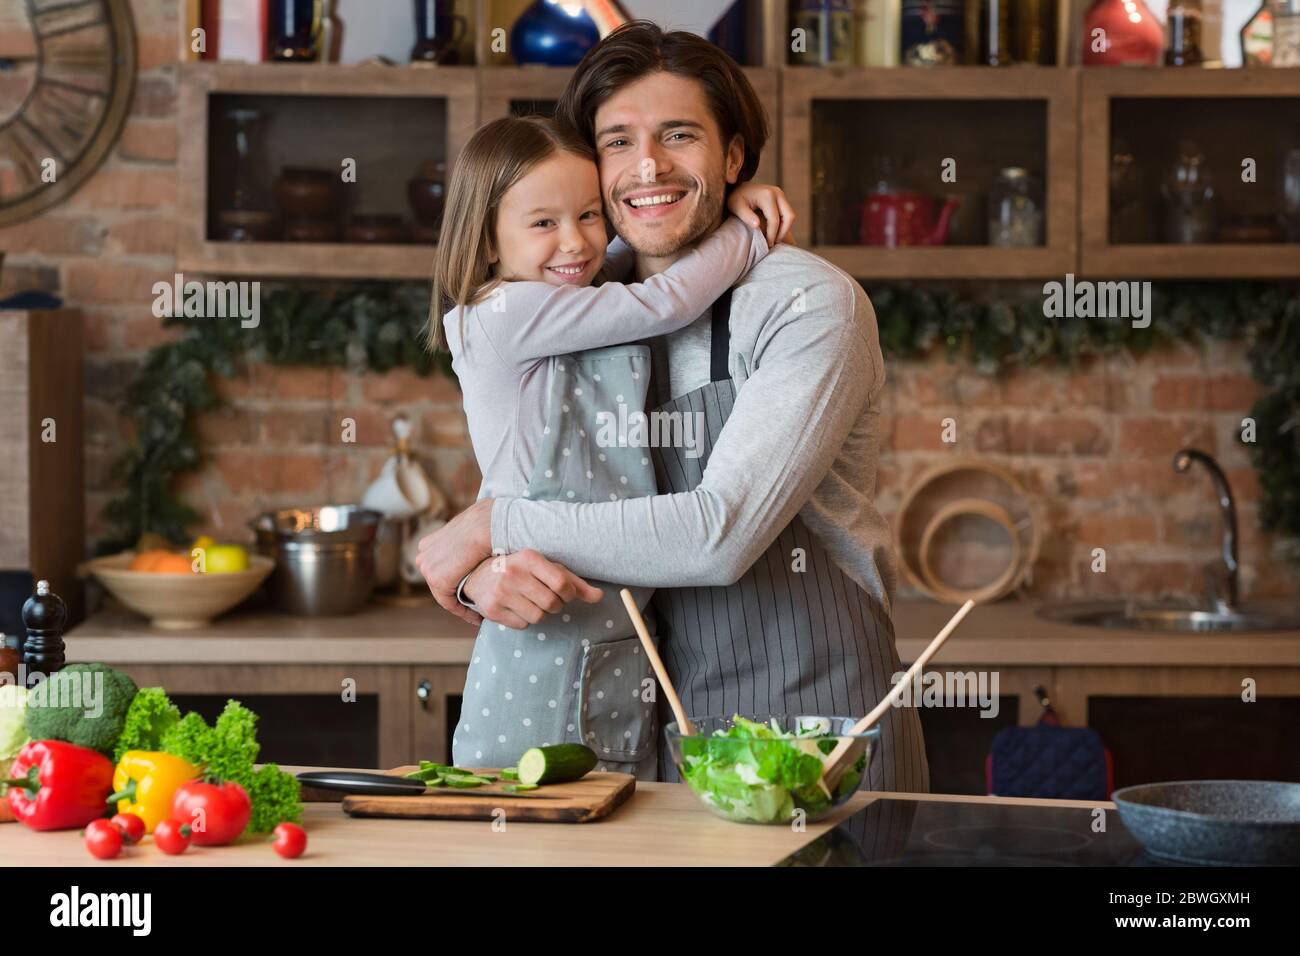 Liebe Zur Familie. Fröhliches kleines Mädchen umarmt mit ihrem glücklichen Vater in der Küche Stockfoto